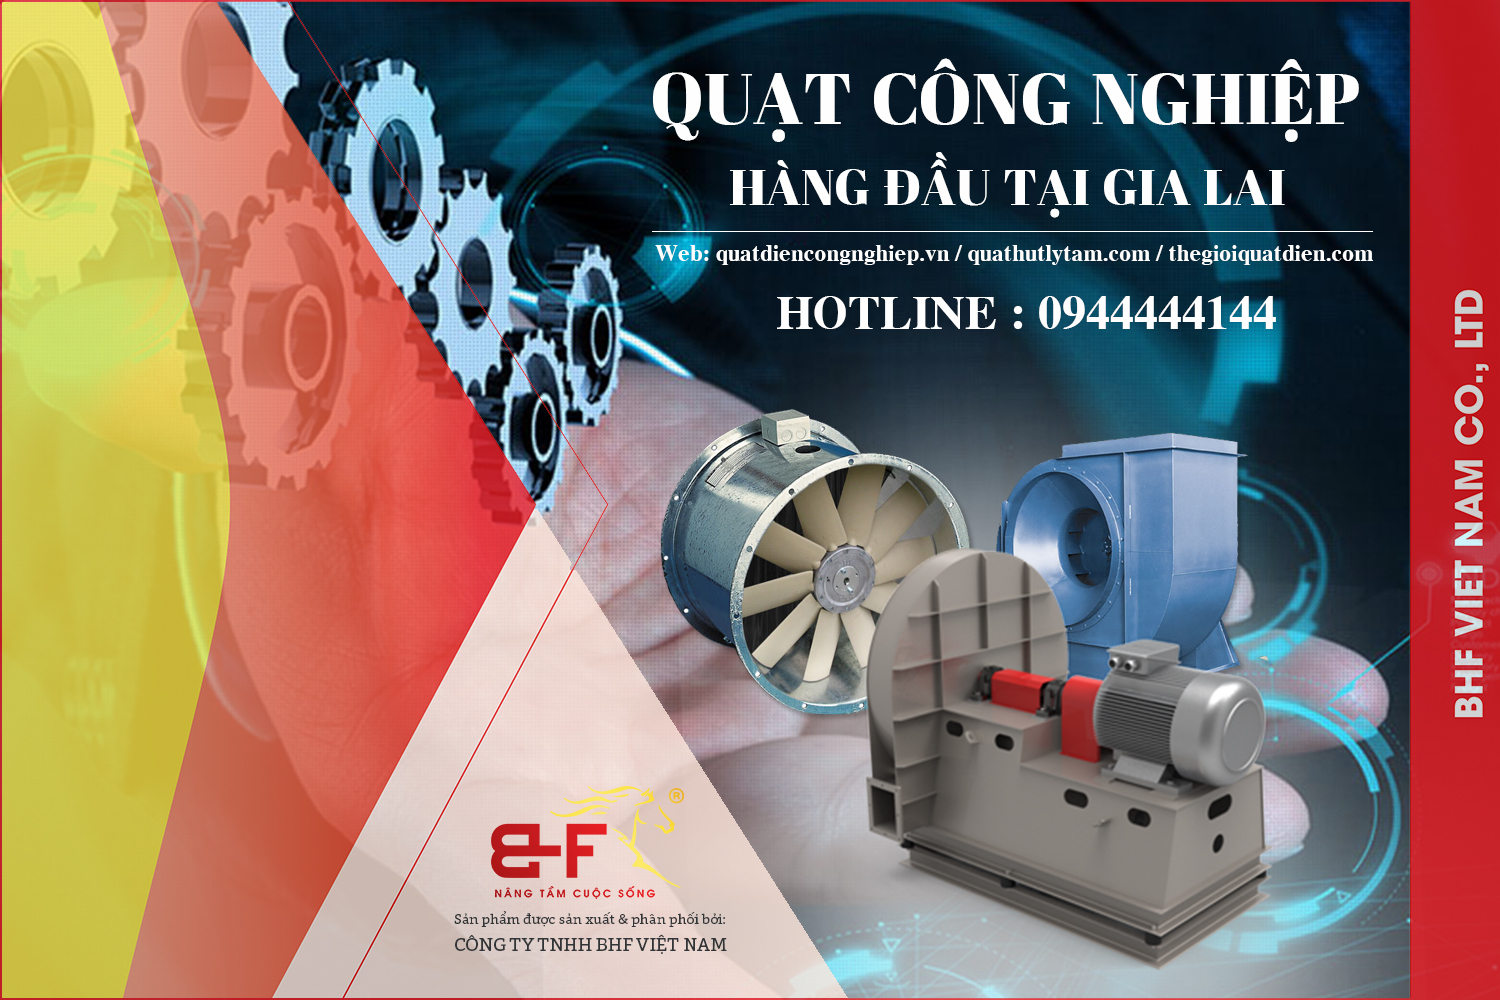 Quạt công nghiệp tại Gia Lai - Do công ty BHF Việt Nam cung cấp